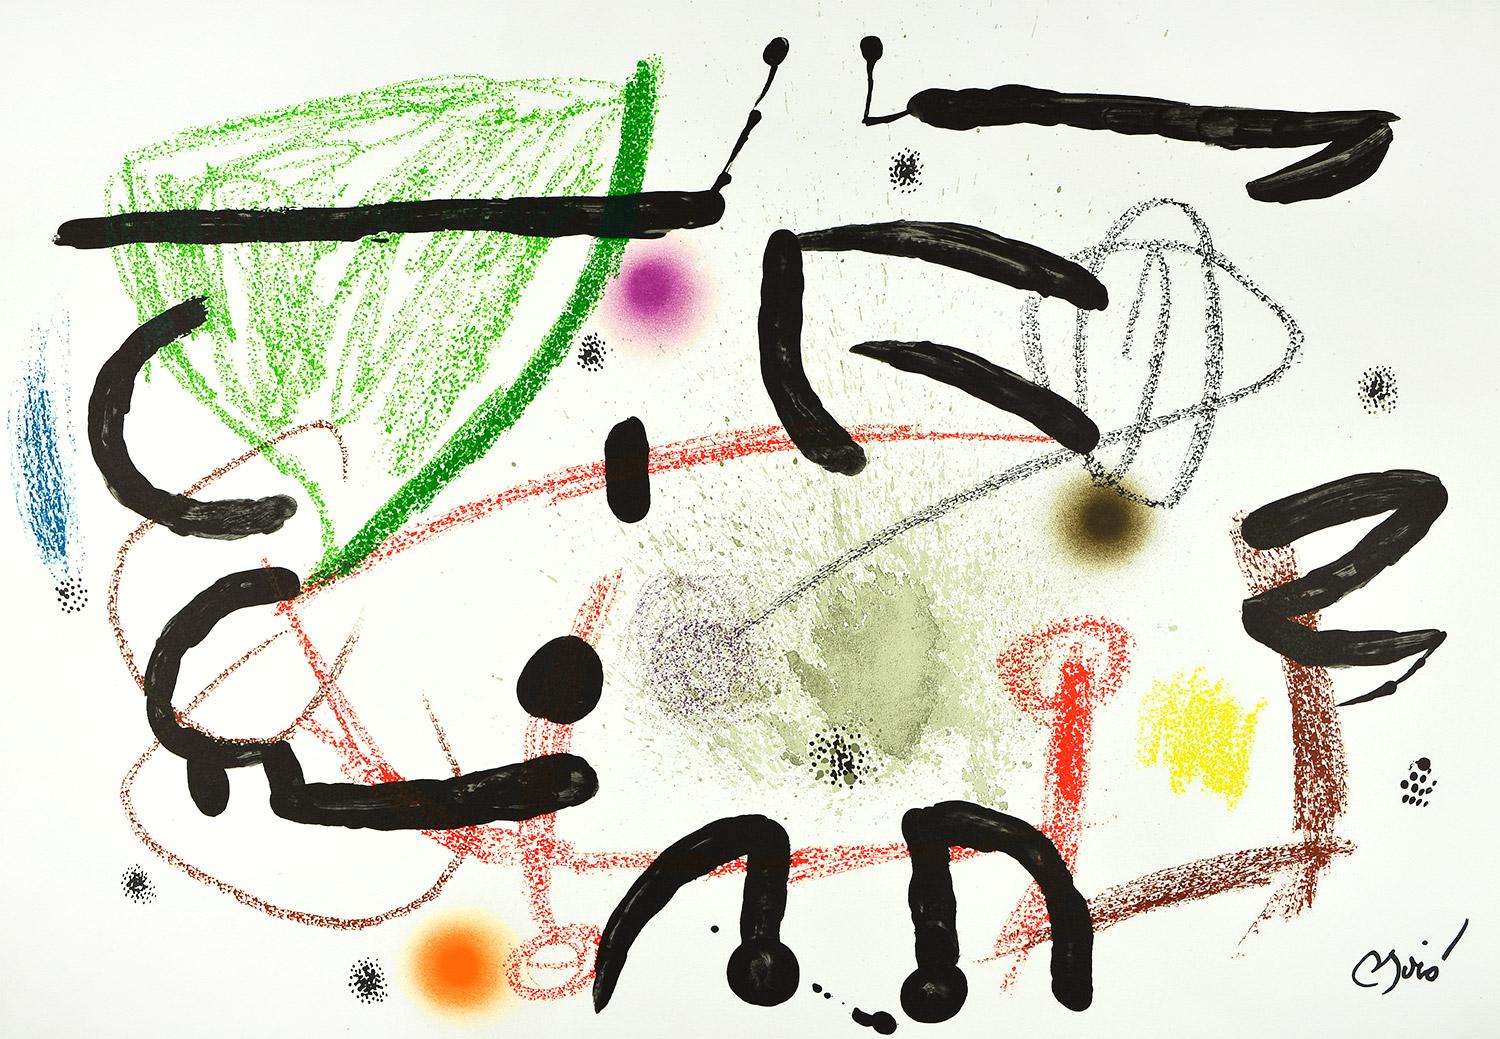 Joan Miró - Maravillas con variaciones acrósticas en el jardín de Miró XV
Date de création : 1975
Support : Lithographie sur papier Gvarro
Édition : 1500
Taille : 49,5 x 71 cm
Condit : En très bon état et jamais encadré
Observations :
Lithographie